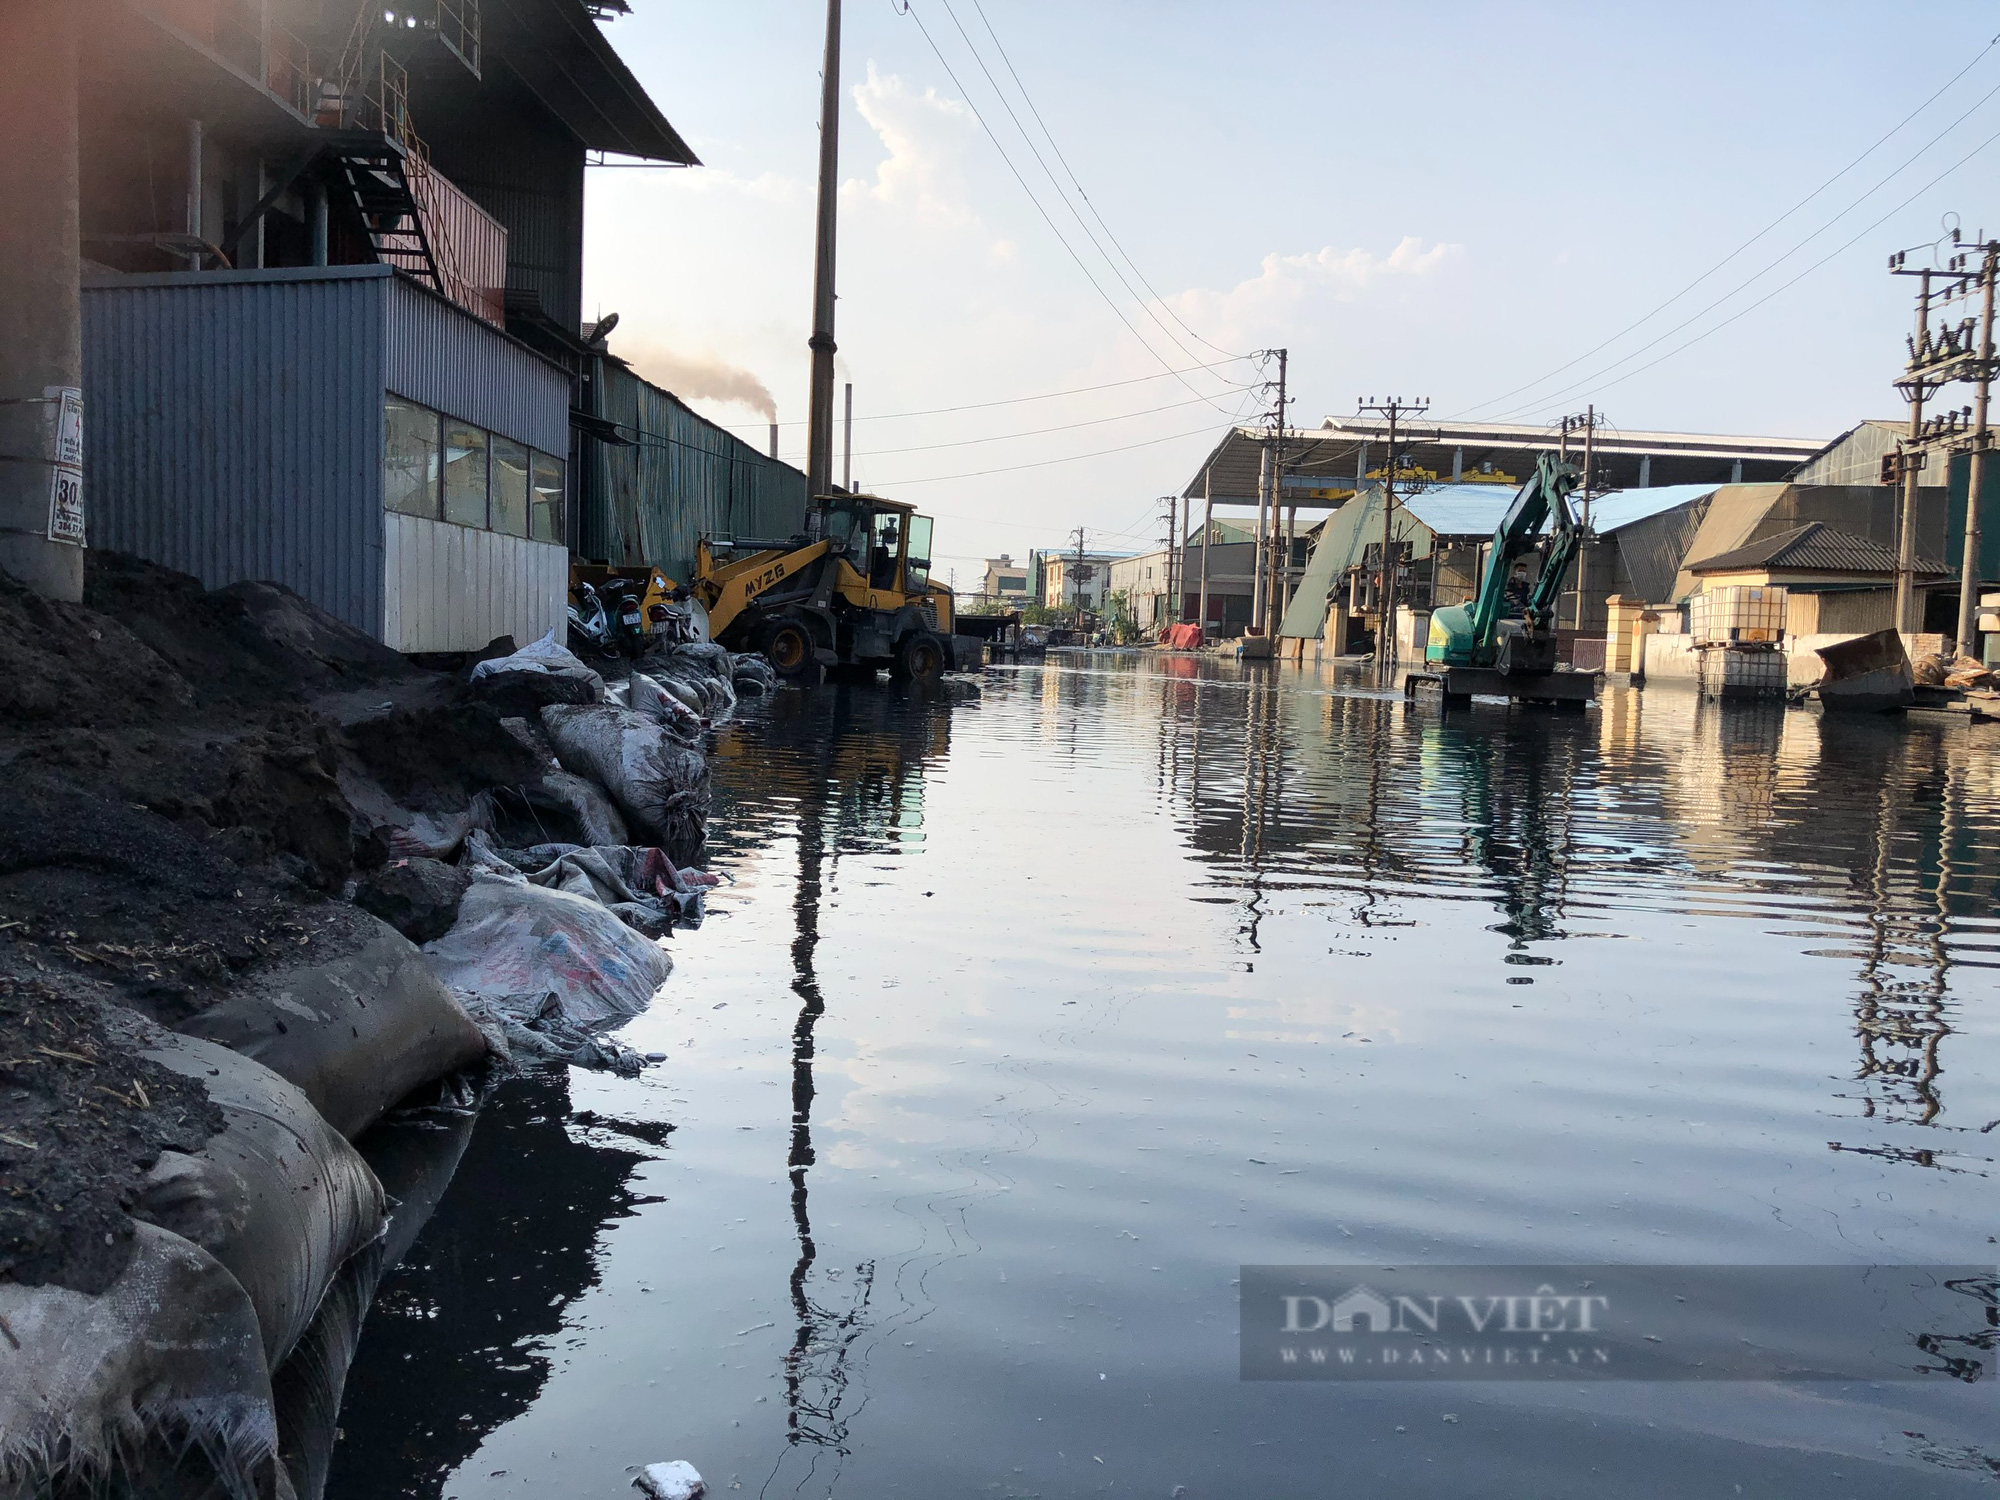 Bắc Ninh: Nước thải bùn đen lại tràn ngập đường CCN giấy Phú Lâm - Ảnh 4.